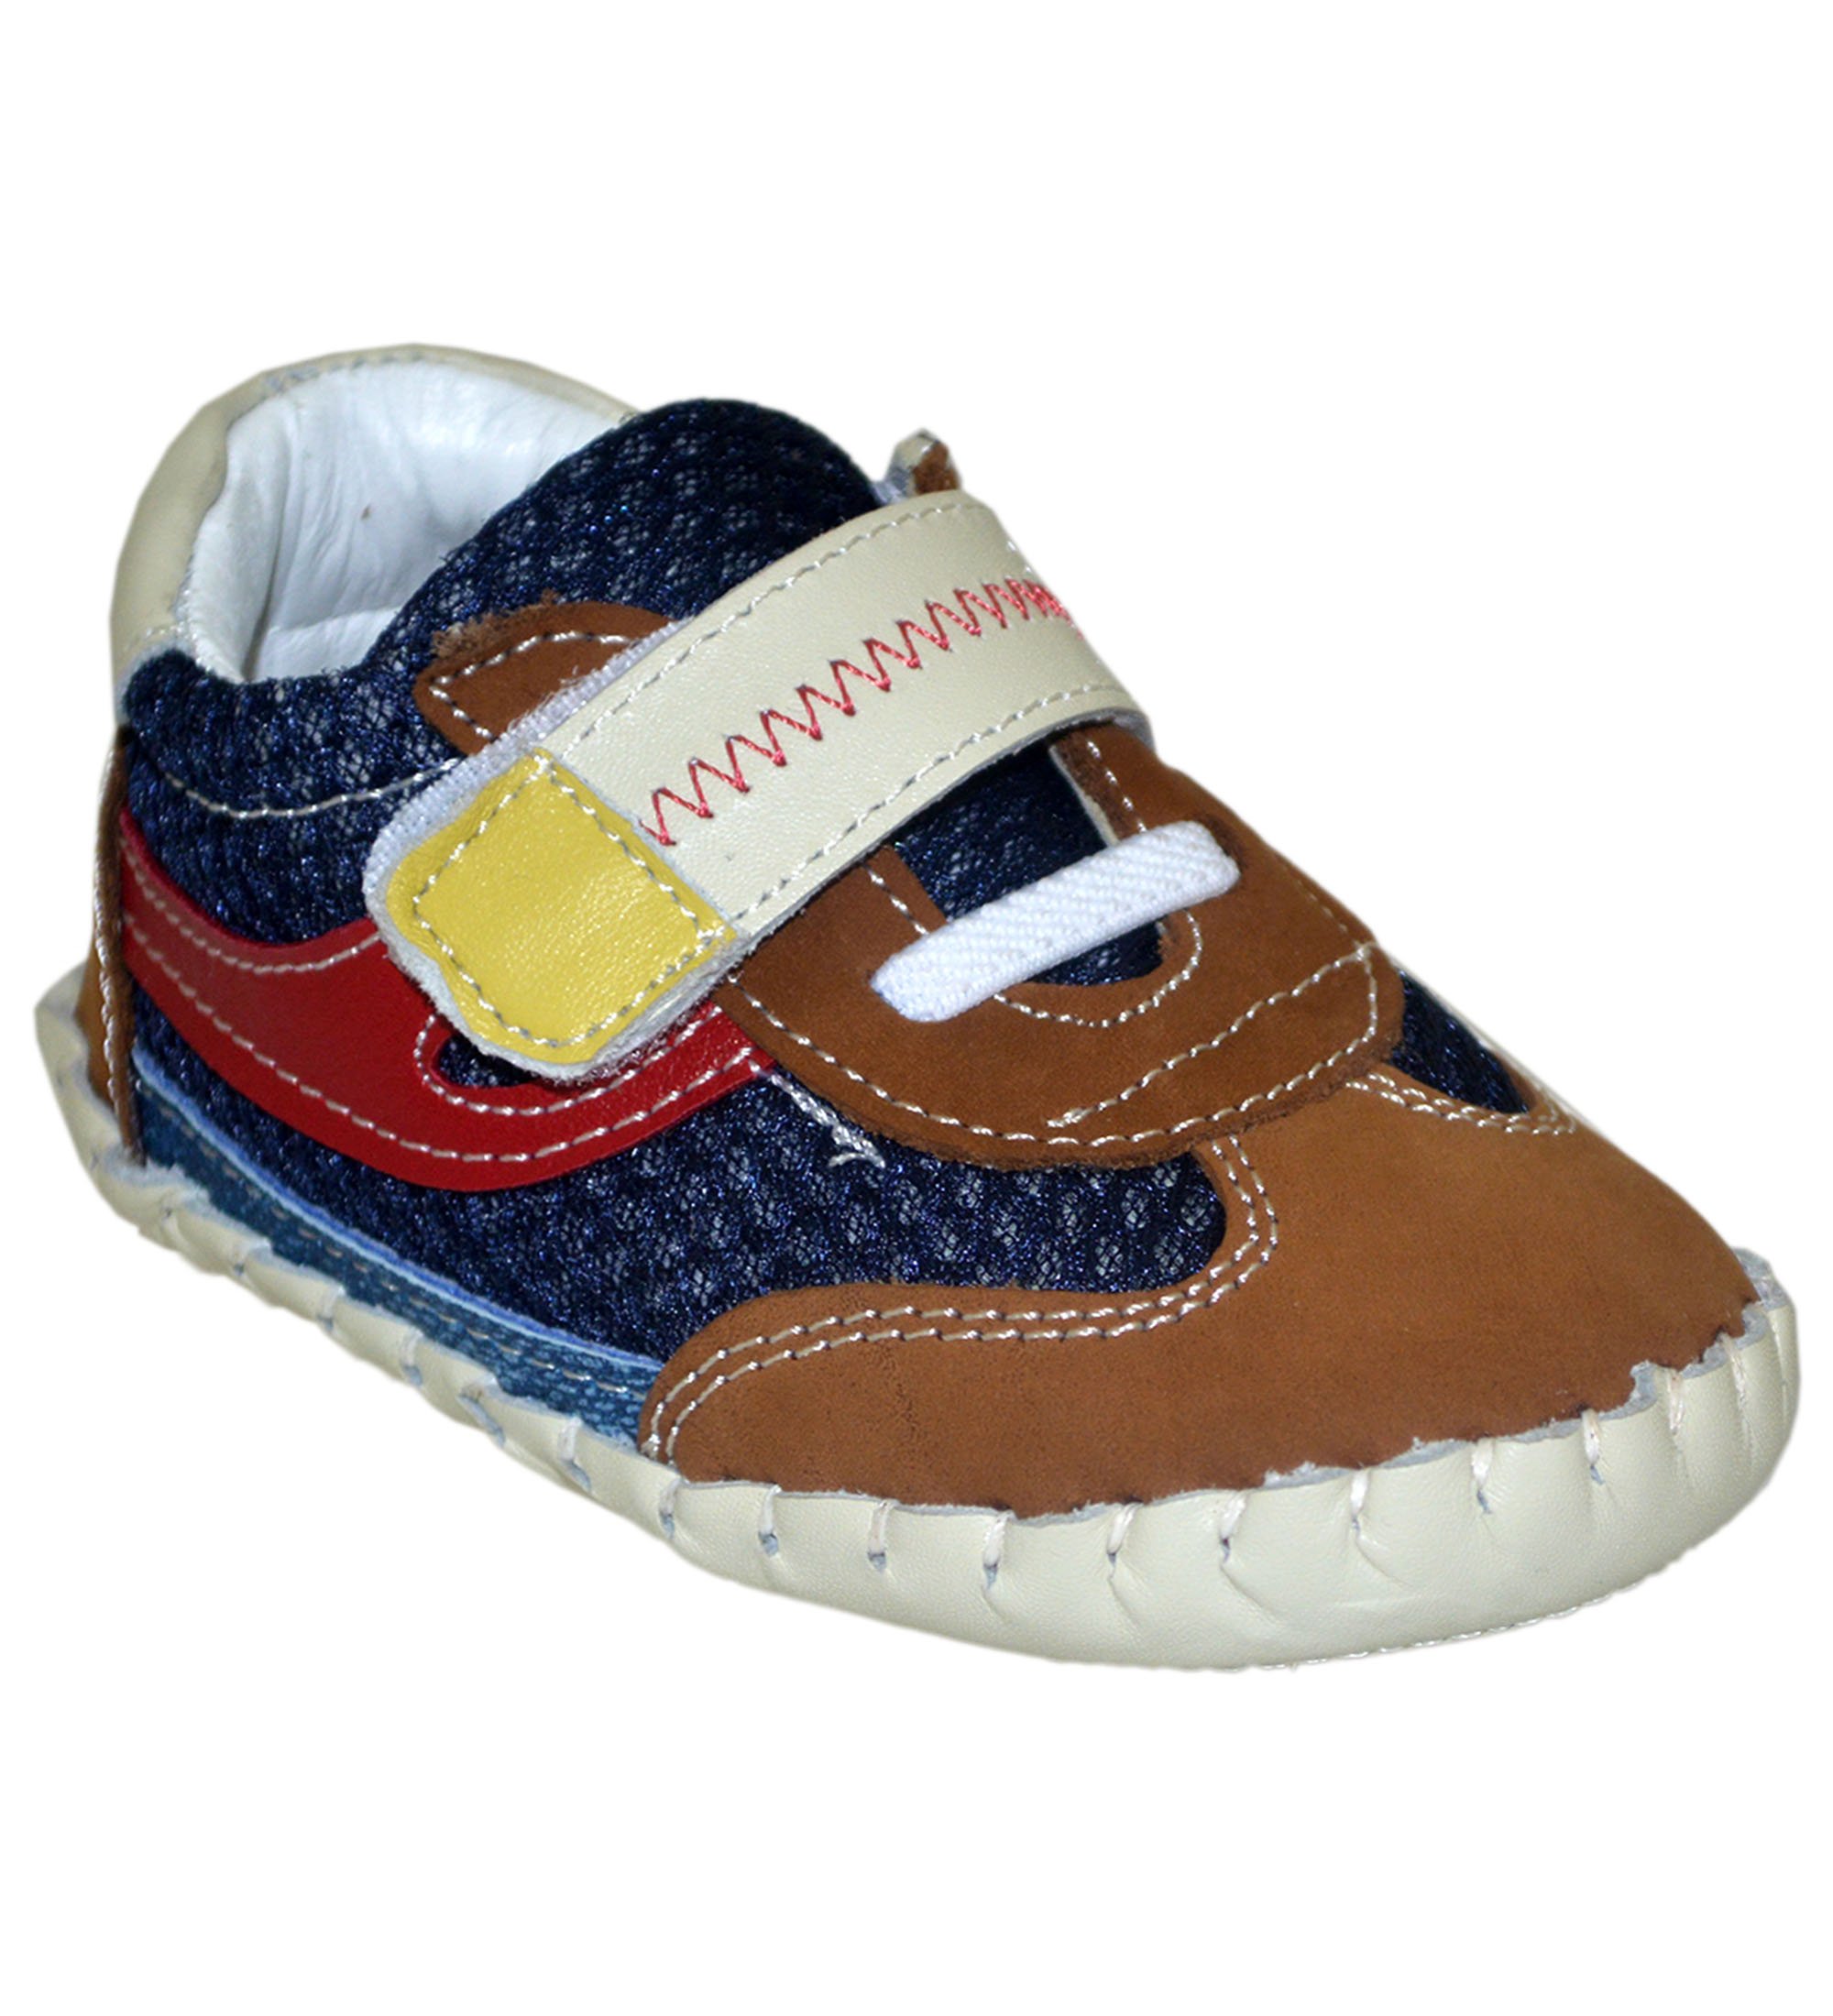 Yeni Doğan Çocuk Sandalet - Kahverengi/Lacivert